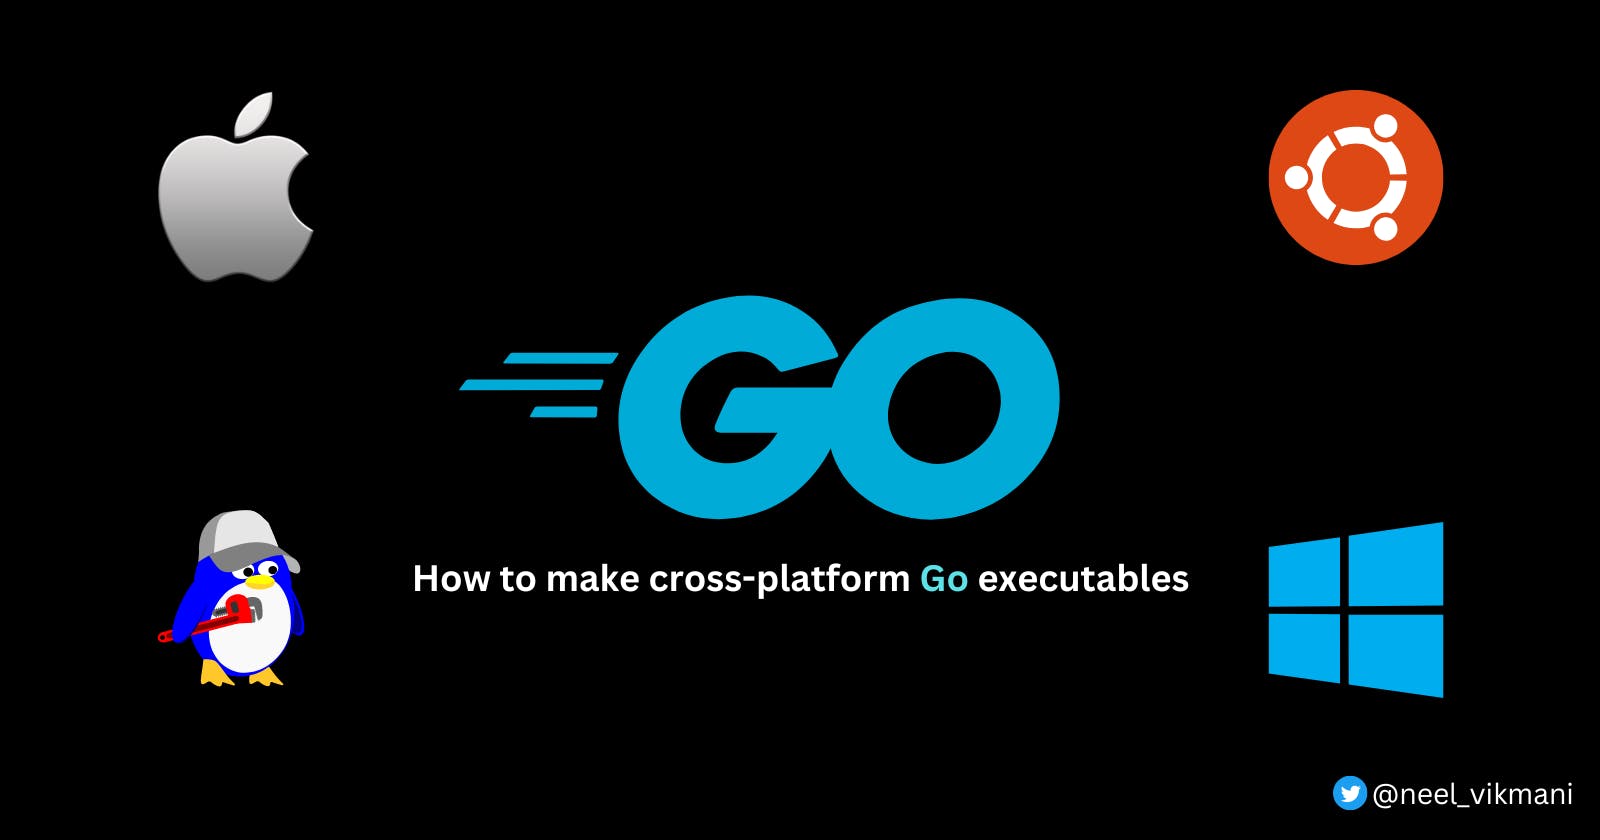 Build cross-platform executables in Go